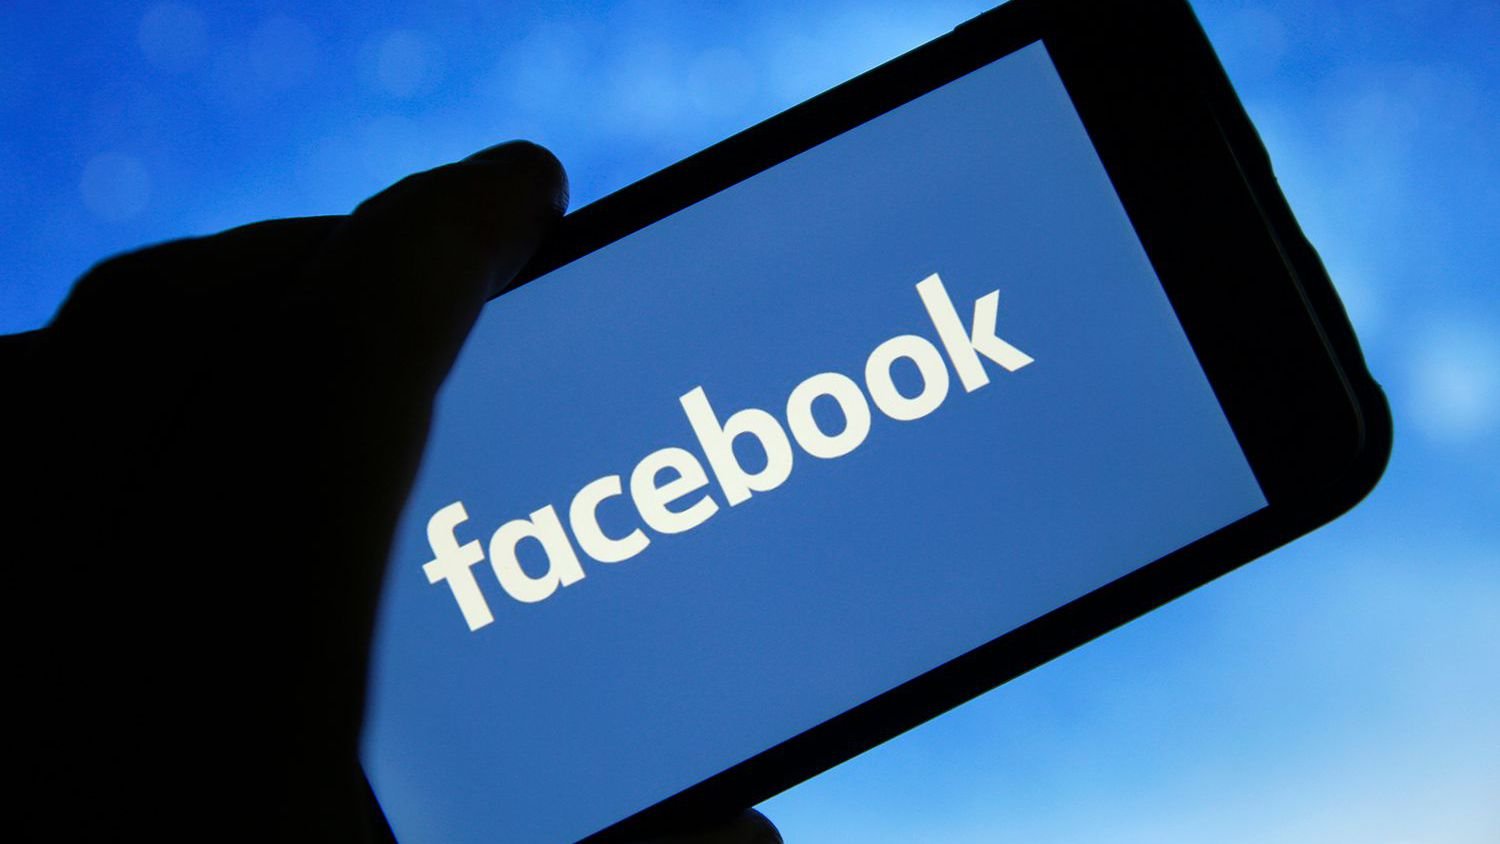  Armata de utilizatori Facebook a adus companiei americane venituri peste aşteptări